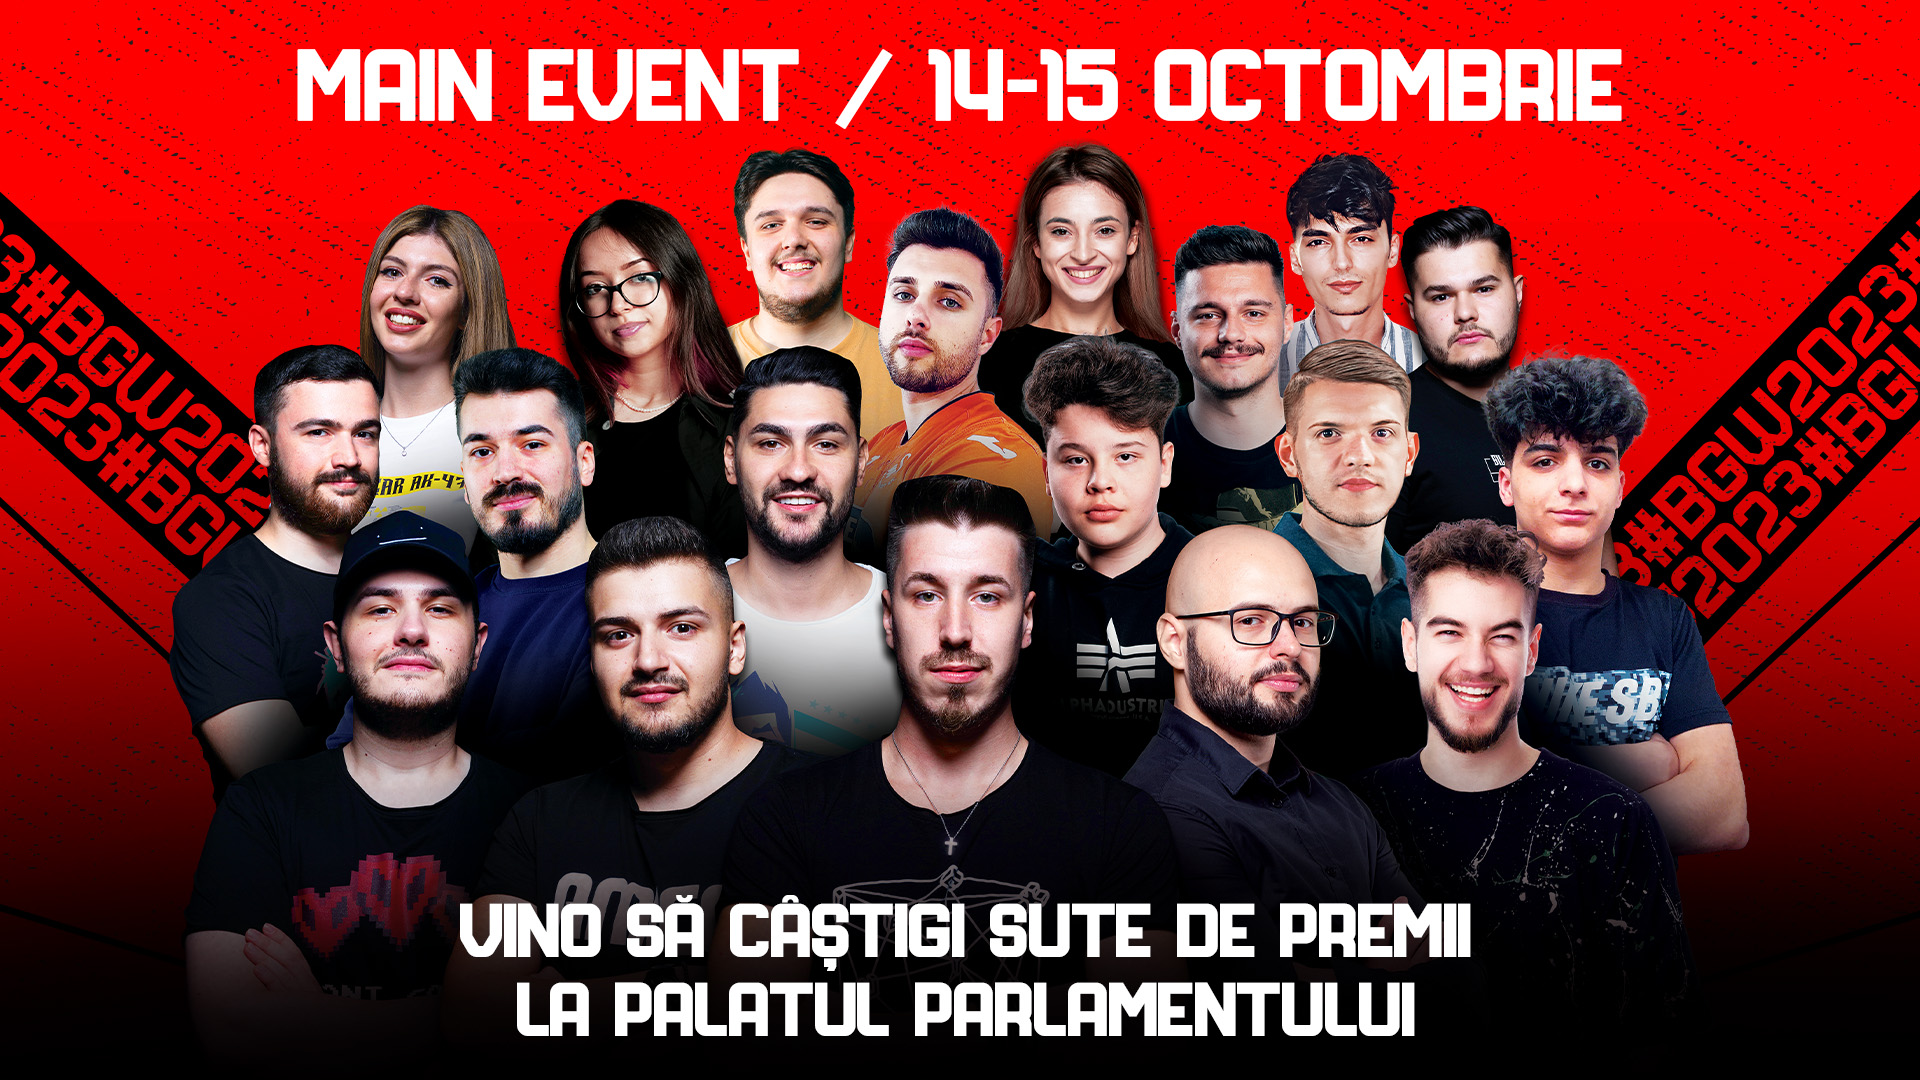 Începe Bucharest Gaming Week, cel mai mare eveniment de gaming din România. Evenimentul central are loc la Palatul Parlamentului cu cei mai renumiți streameri, cele mai noi jocuri și concursuri cu sute de premii